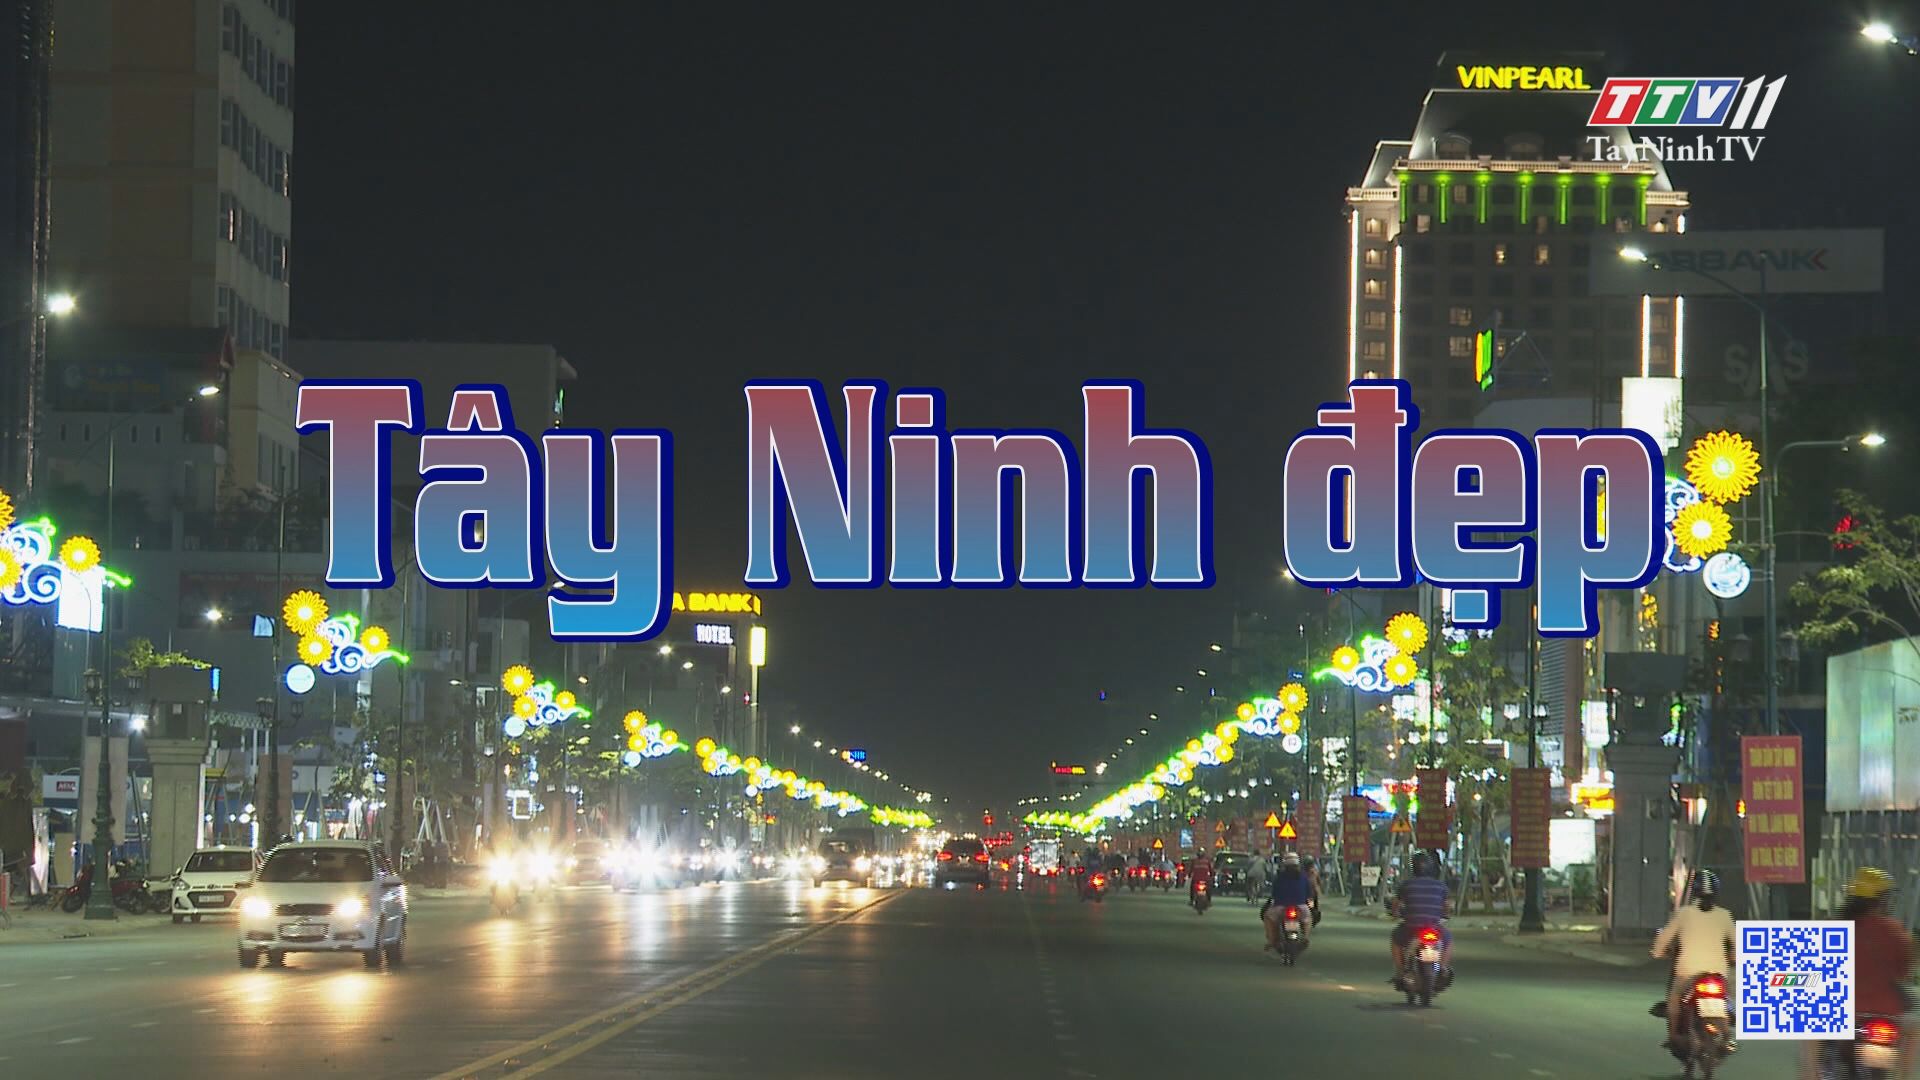 Tây Ninh đẹp | ẤN TƯỢNG TÂY NINH | TayNinhTV